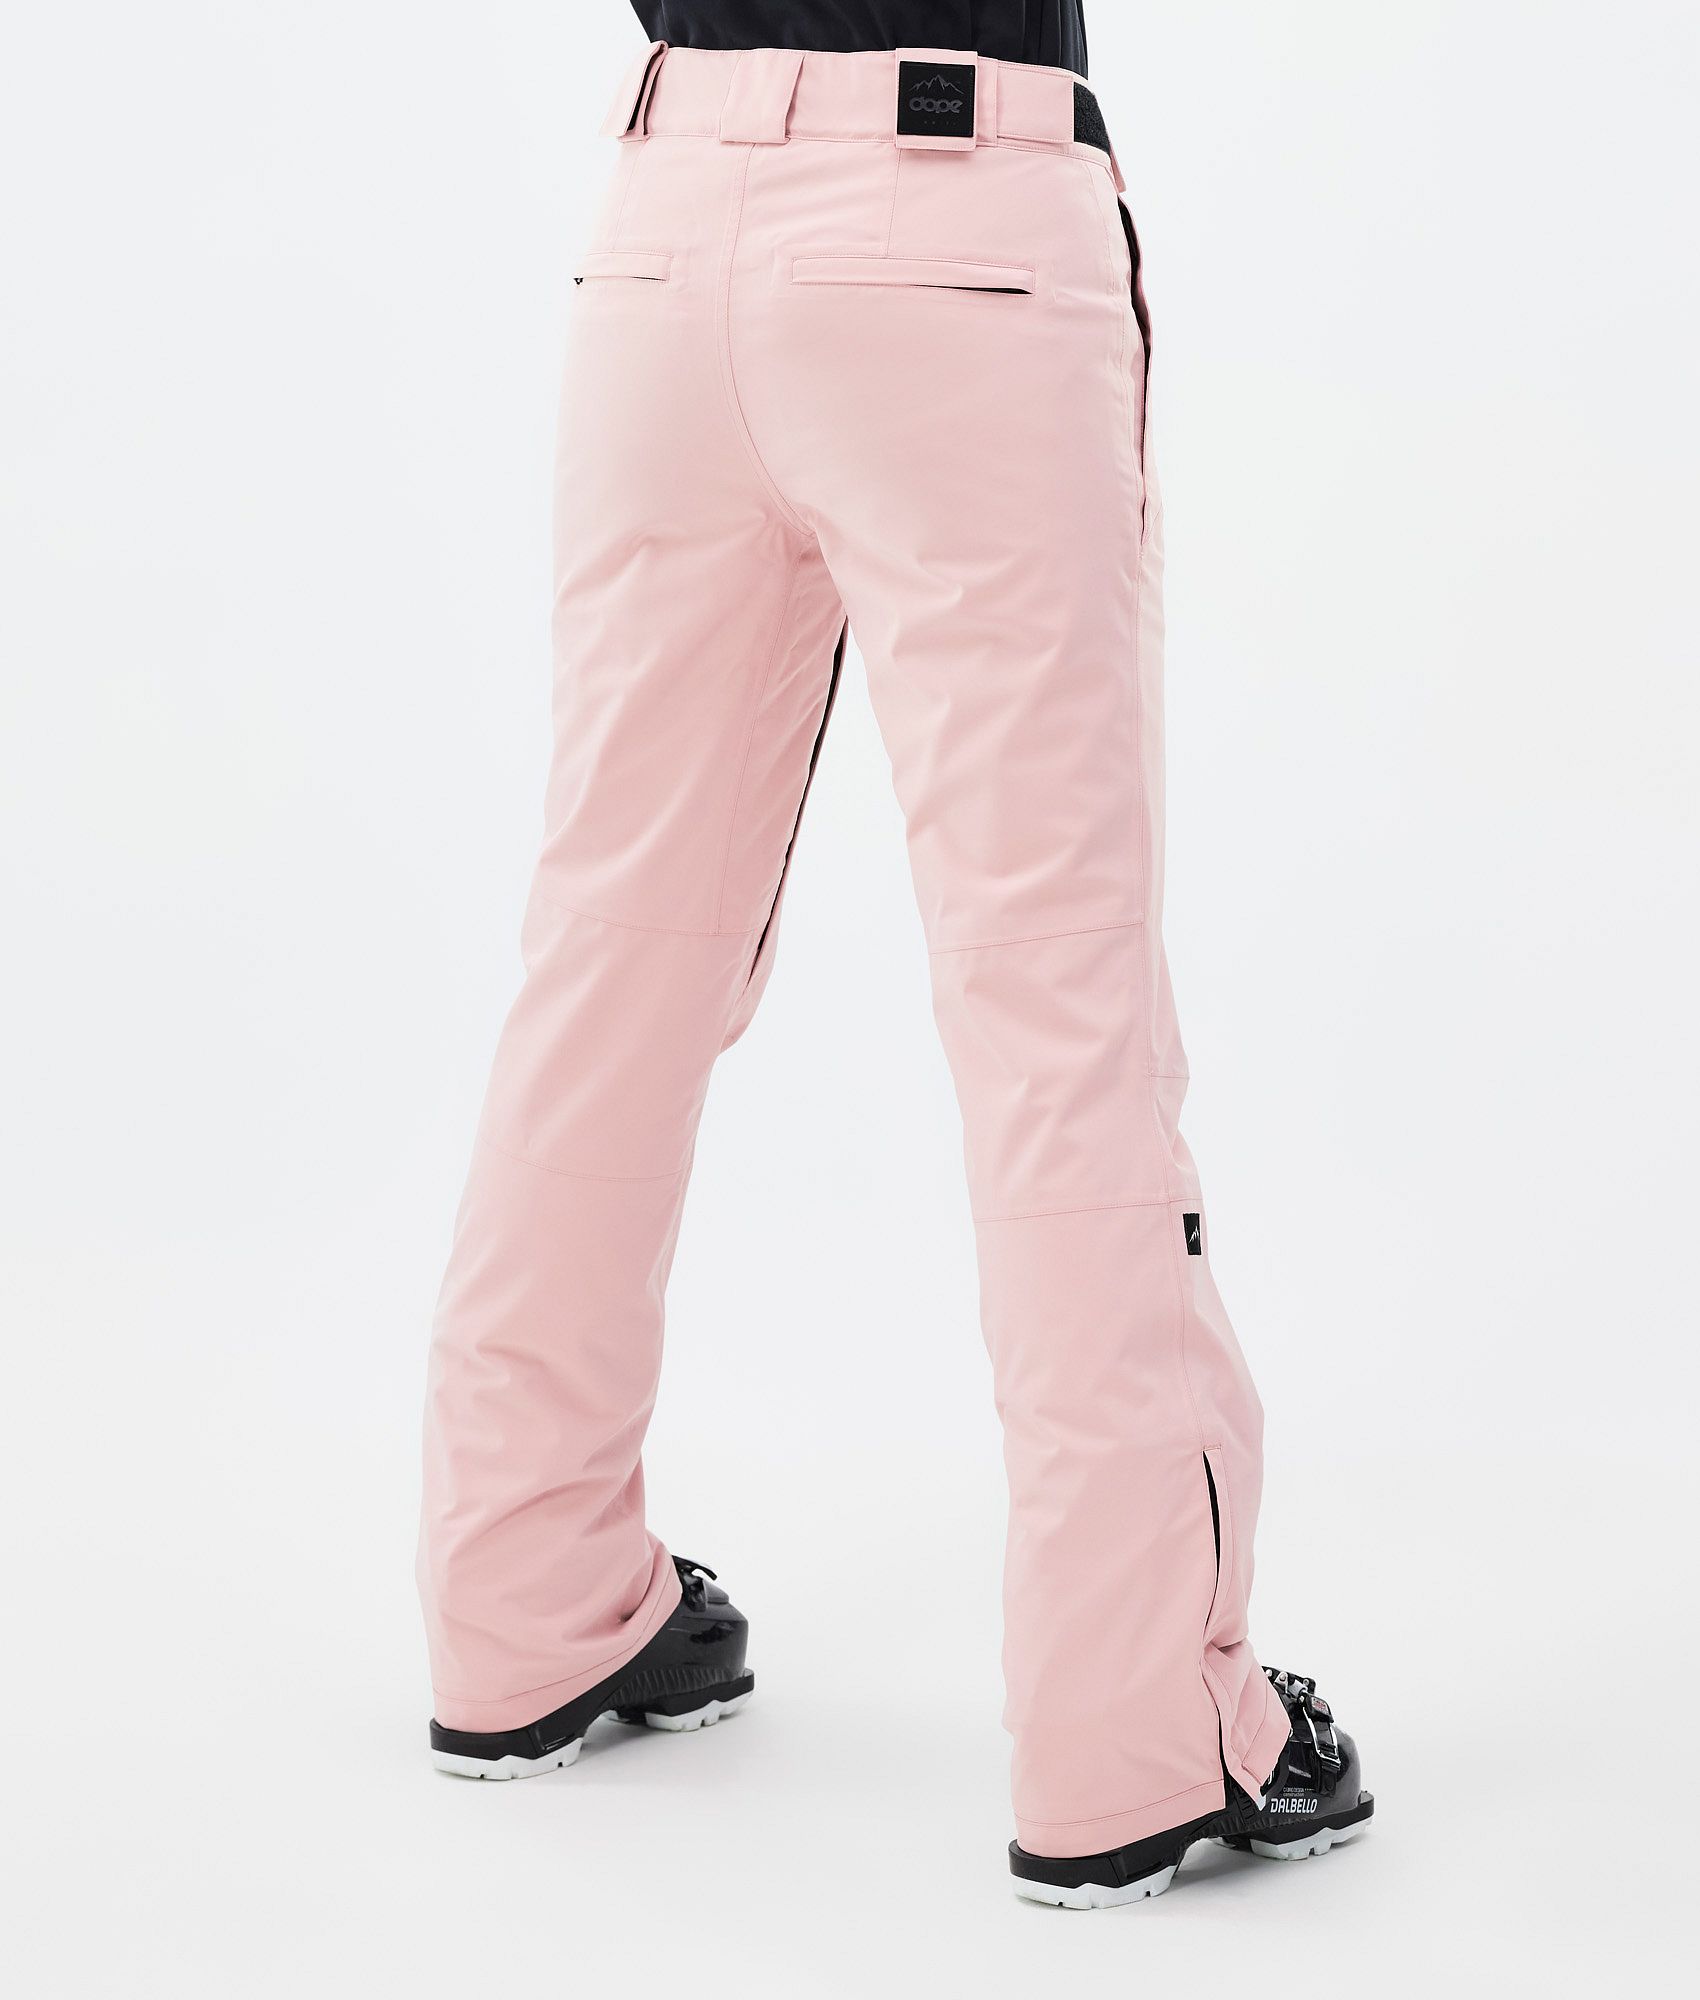 VAN HEUSEN Solid Women Pink Track Pants - Buy VAN HEUSEN Solid Women Pink  Track Pants Online at Best Prices in India | Flipkart.com